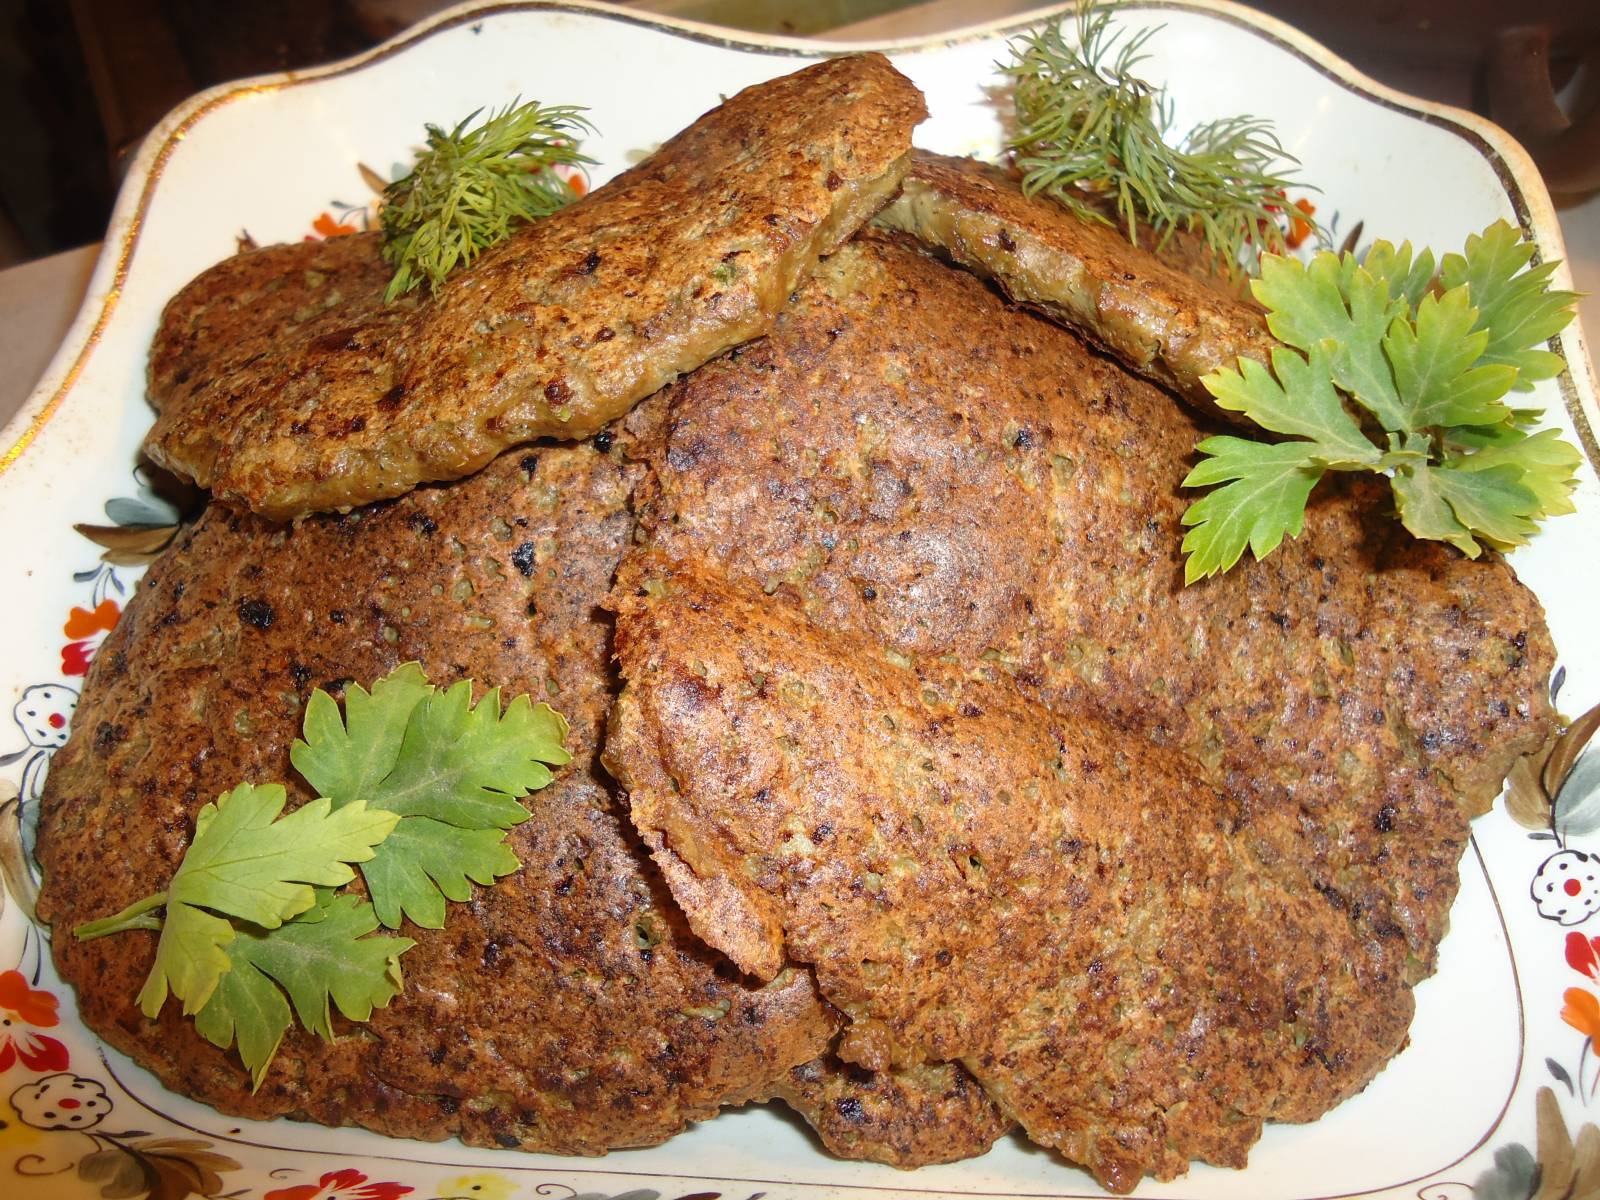 Блюда из говяжьей печени рецепты быстро и вкусно с фото пошагово